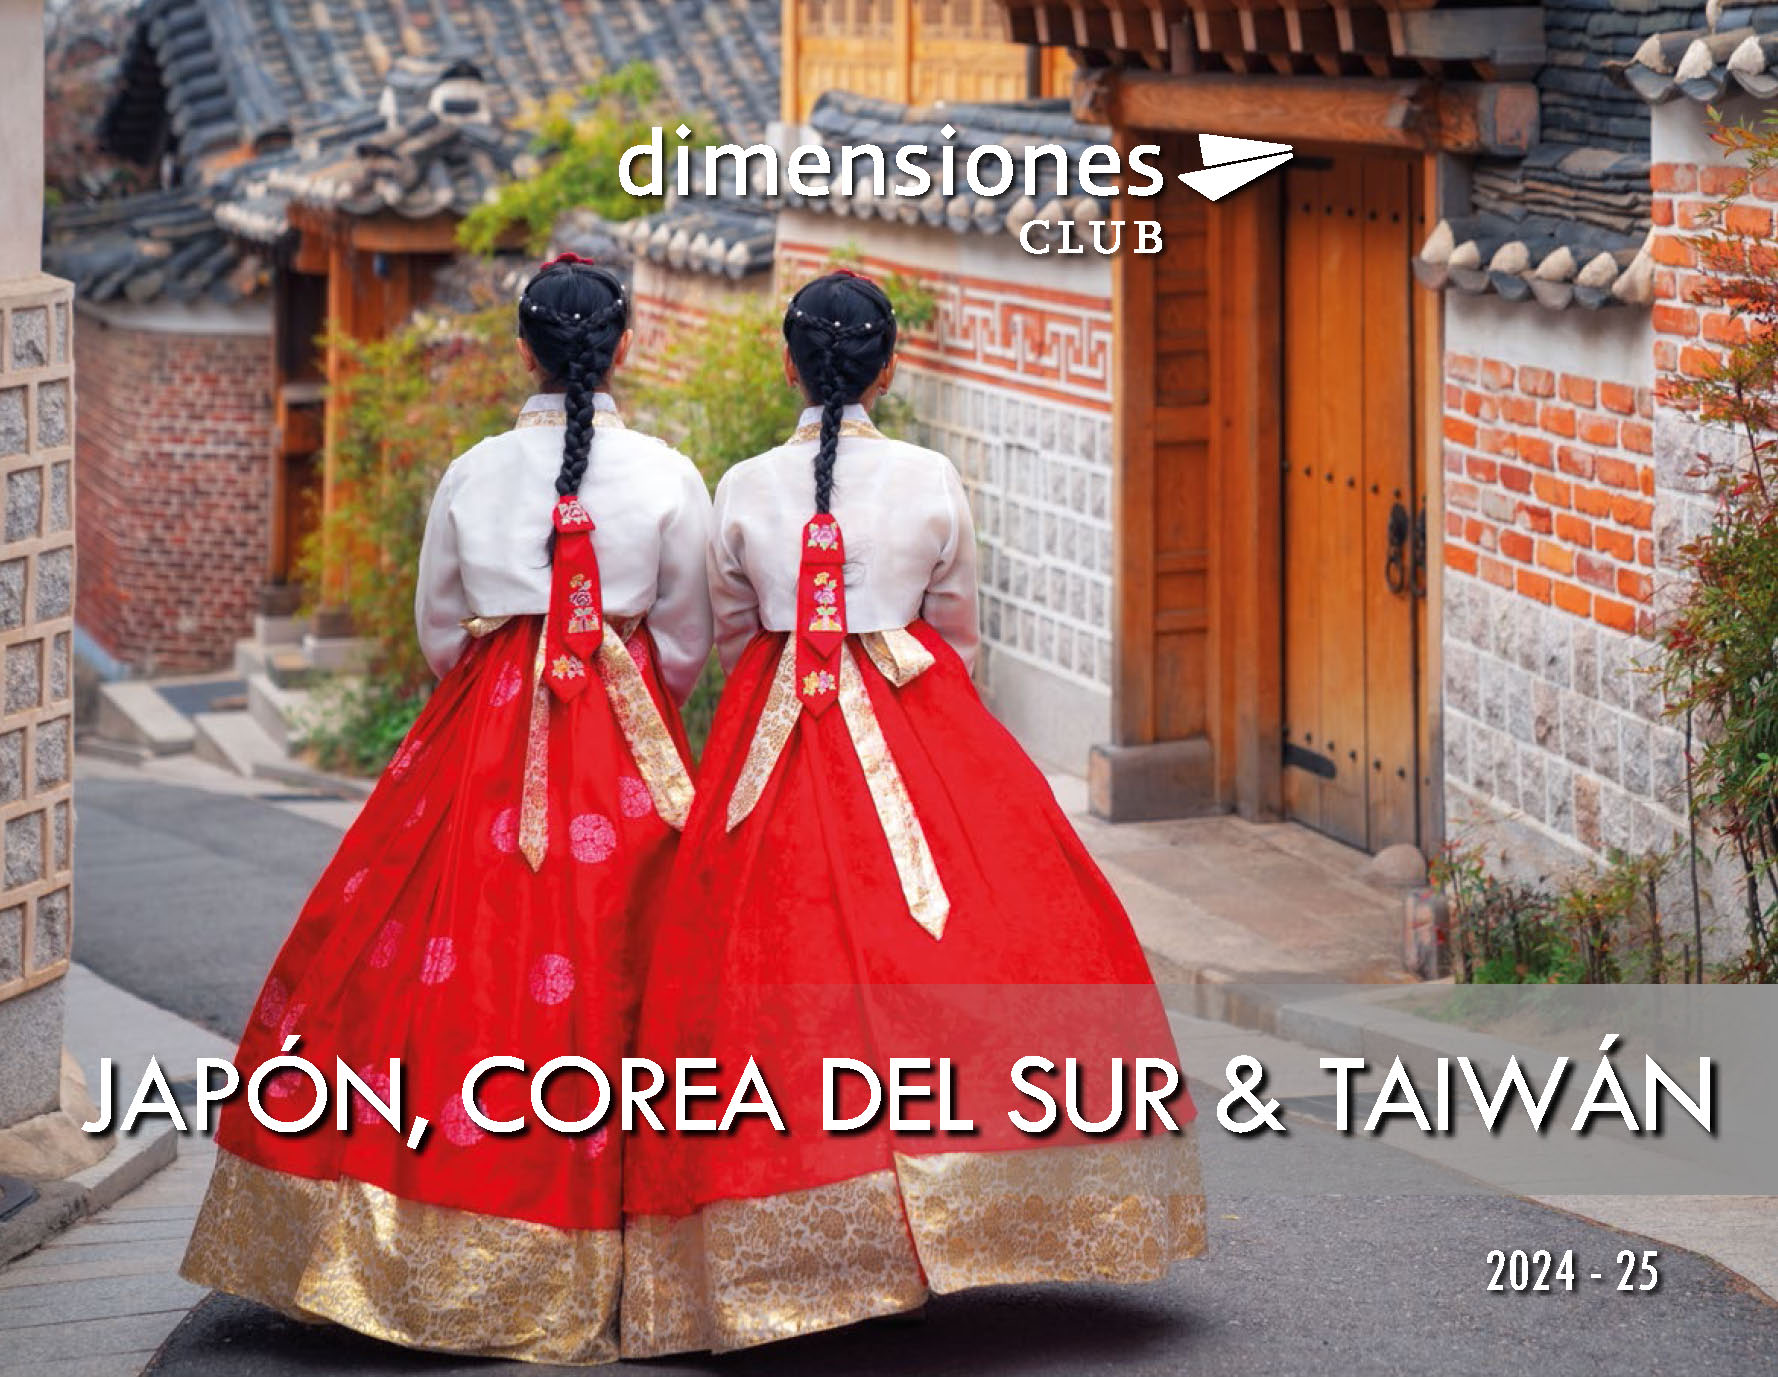 Catalogo Dimensiones Club Viajes a Japon Corea del Sur y Taiwan 2024